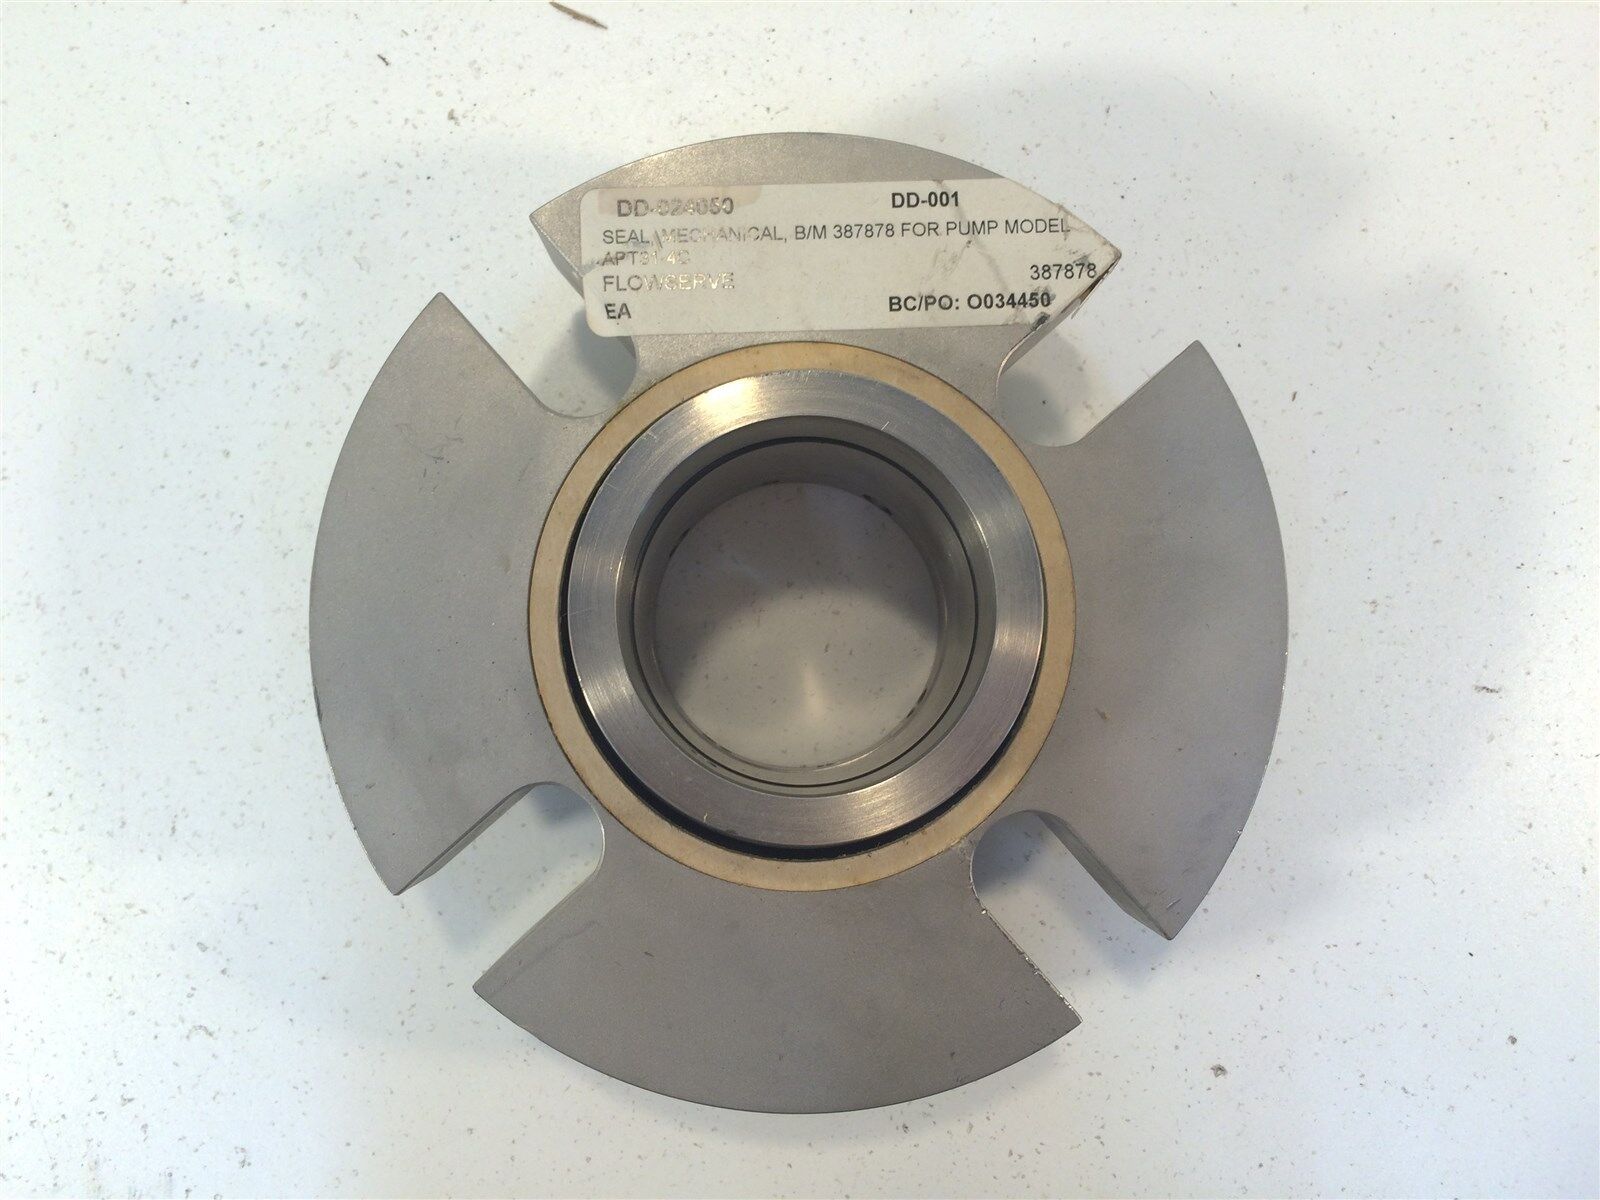 Flowserve Mechanical Seal 387878 For Pump Model APT31-4C